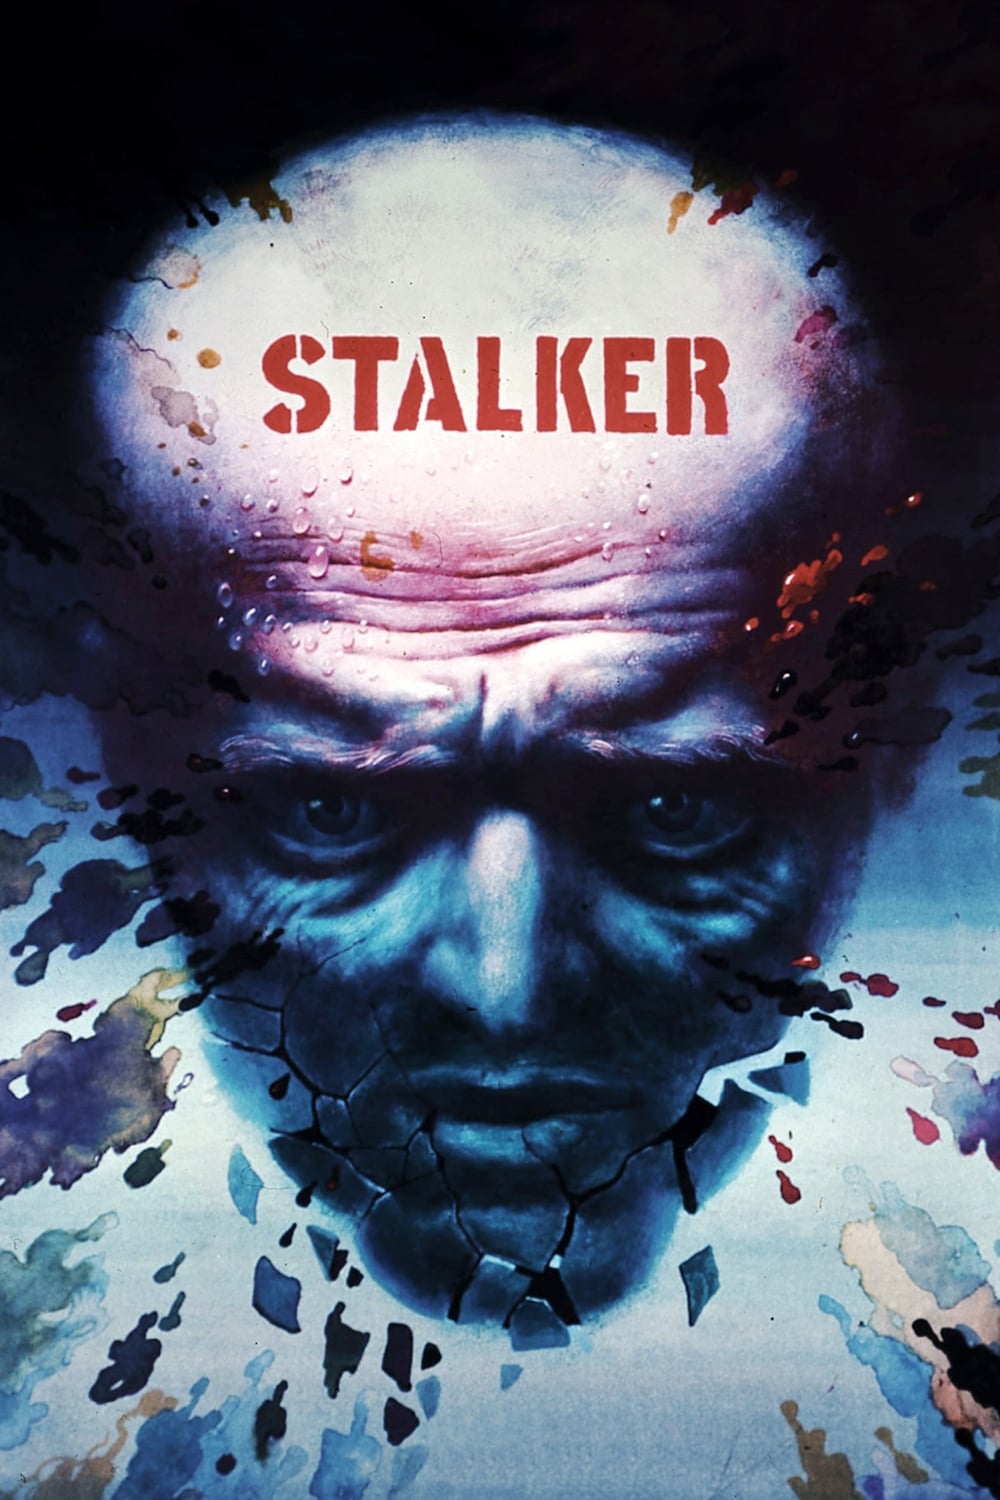 Stalker [HD] (1979)